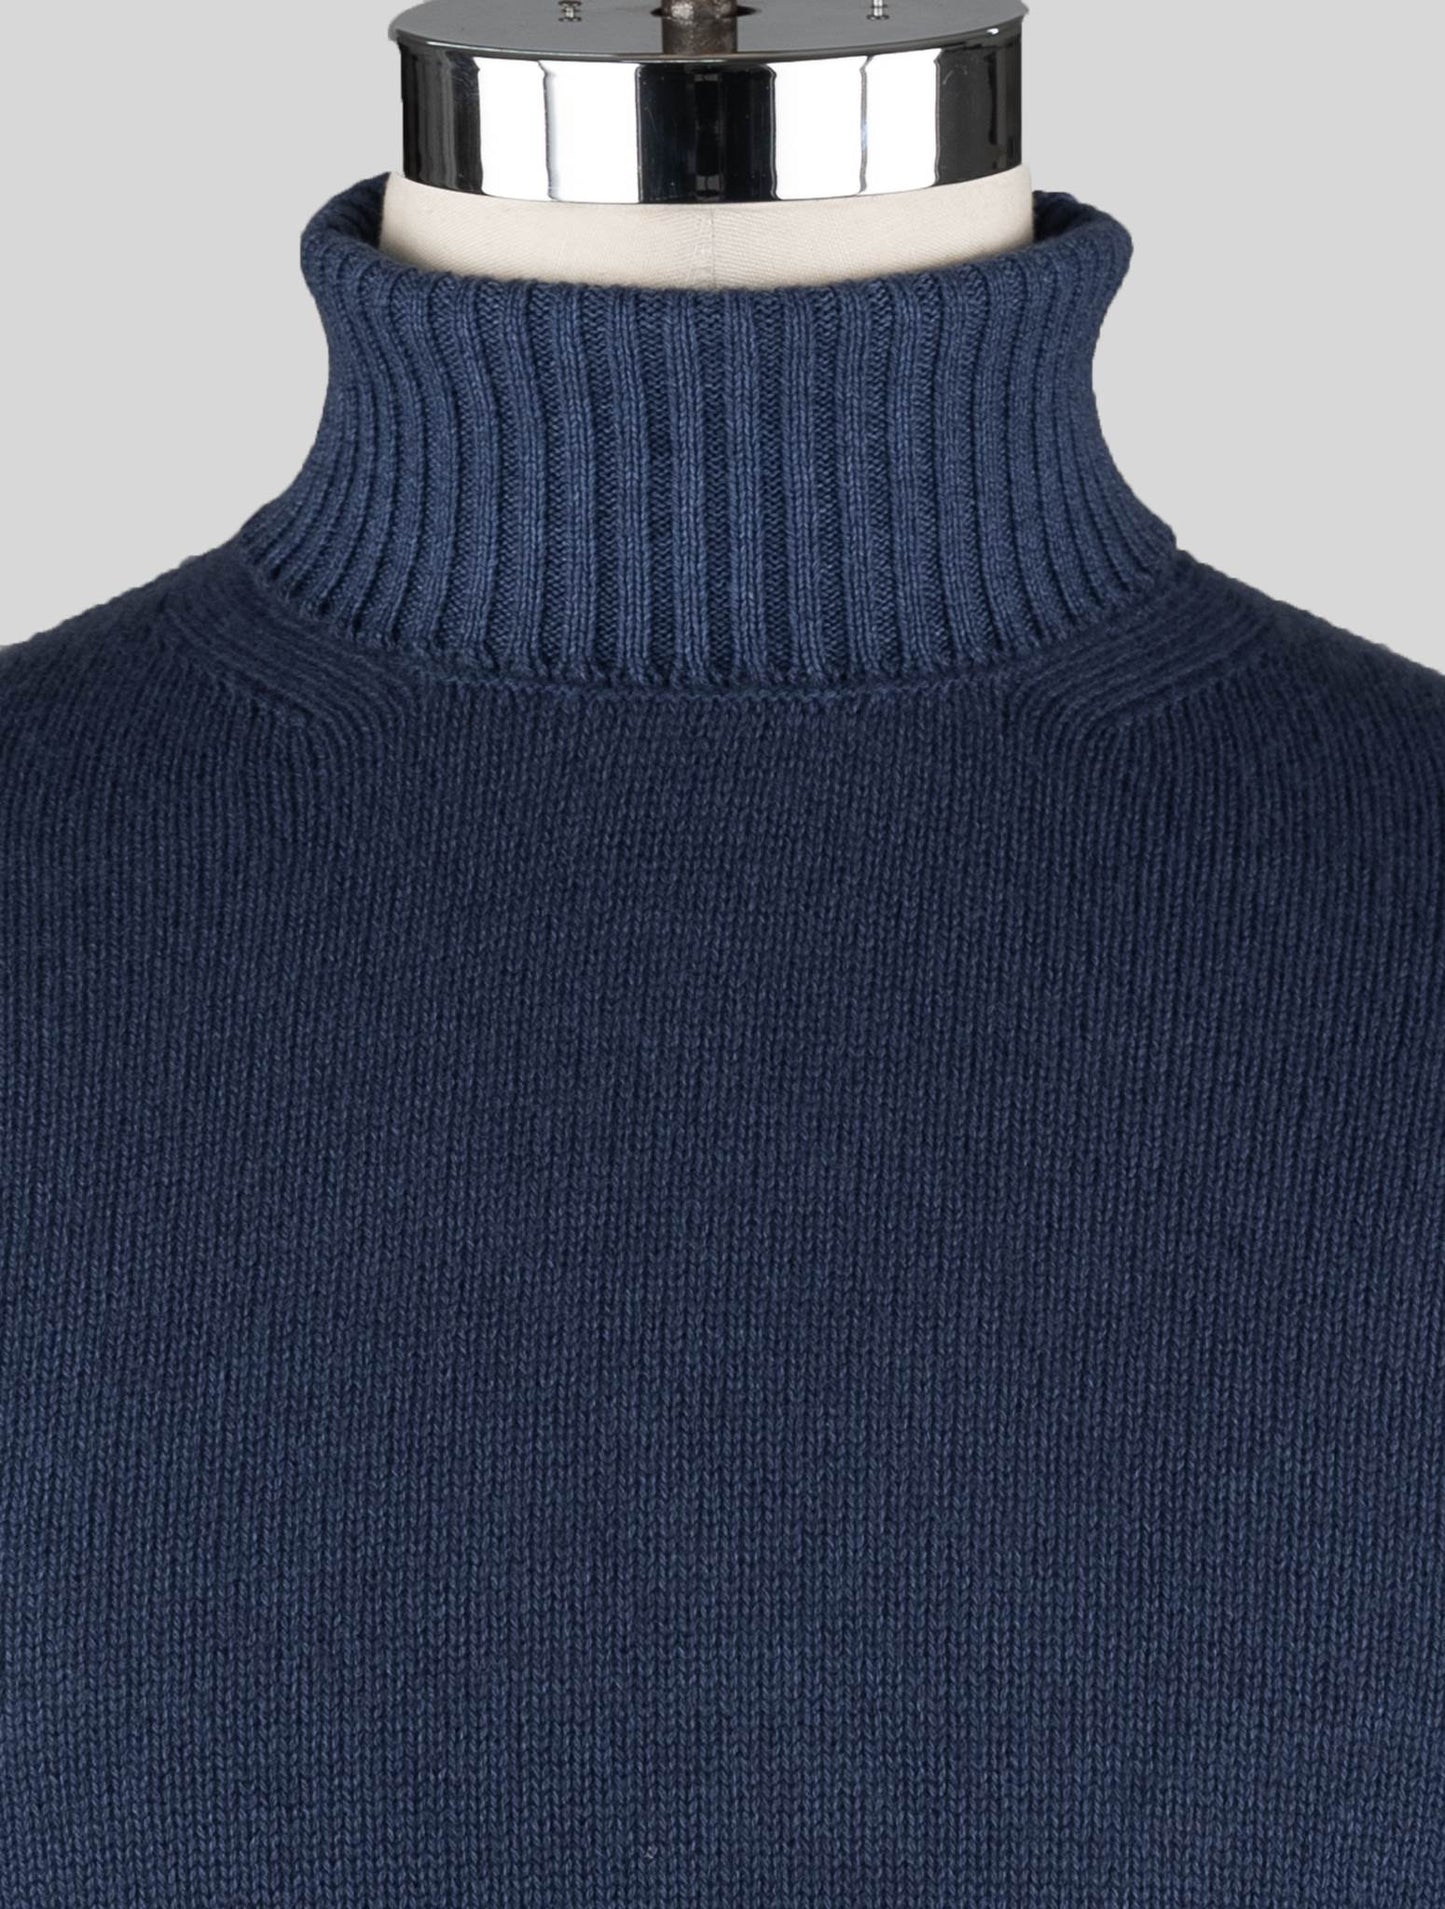 Malo Blue Virgin Wool Sweater Turtleneck